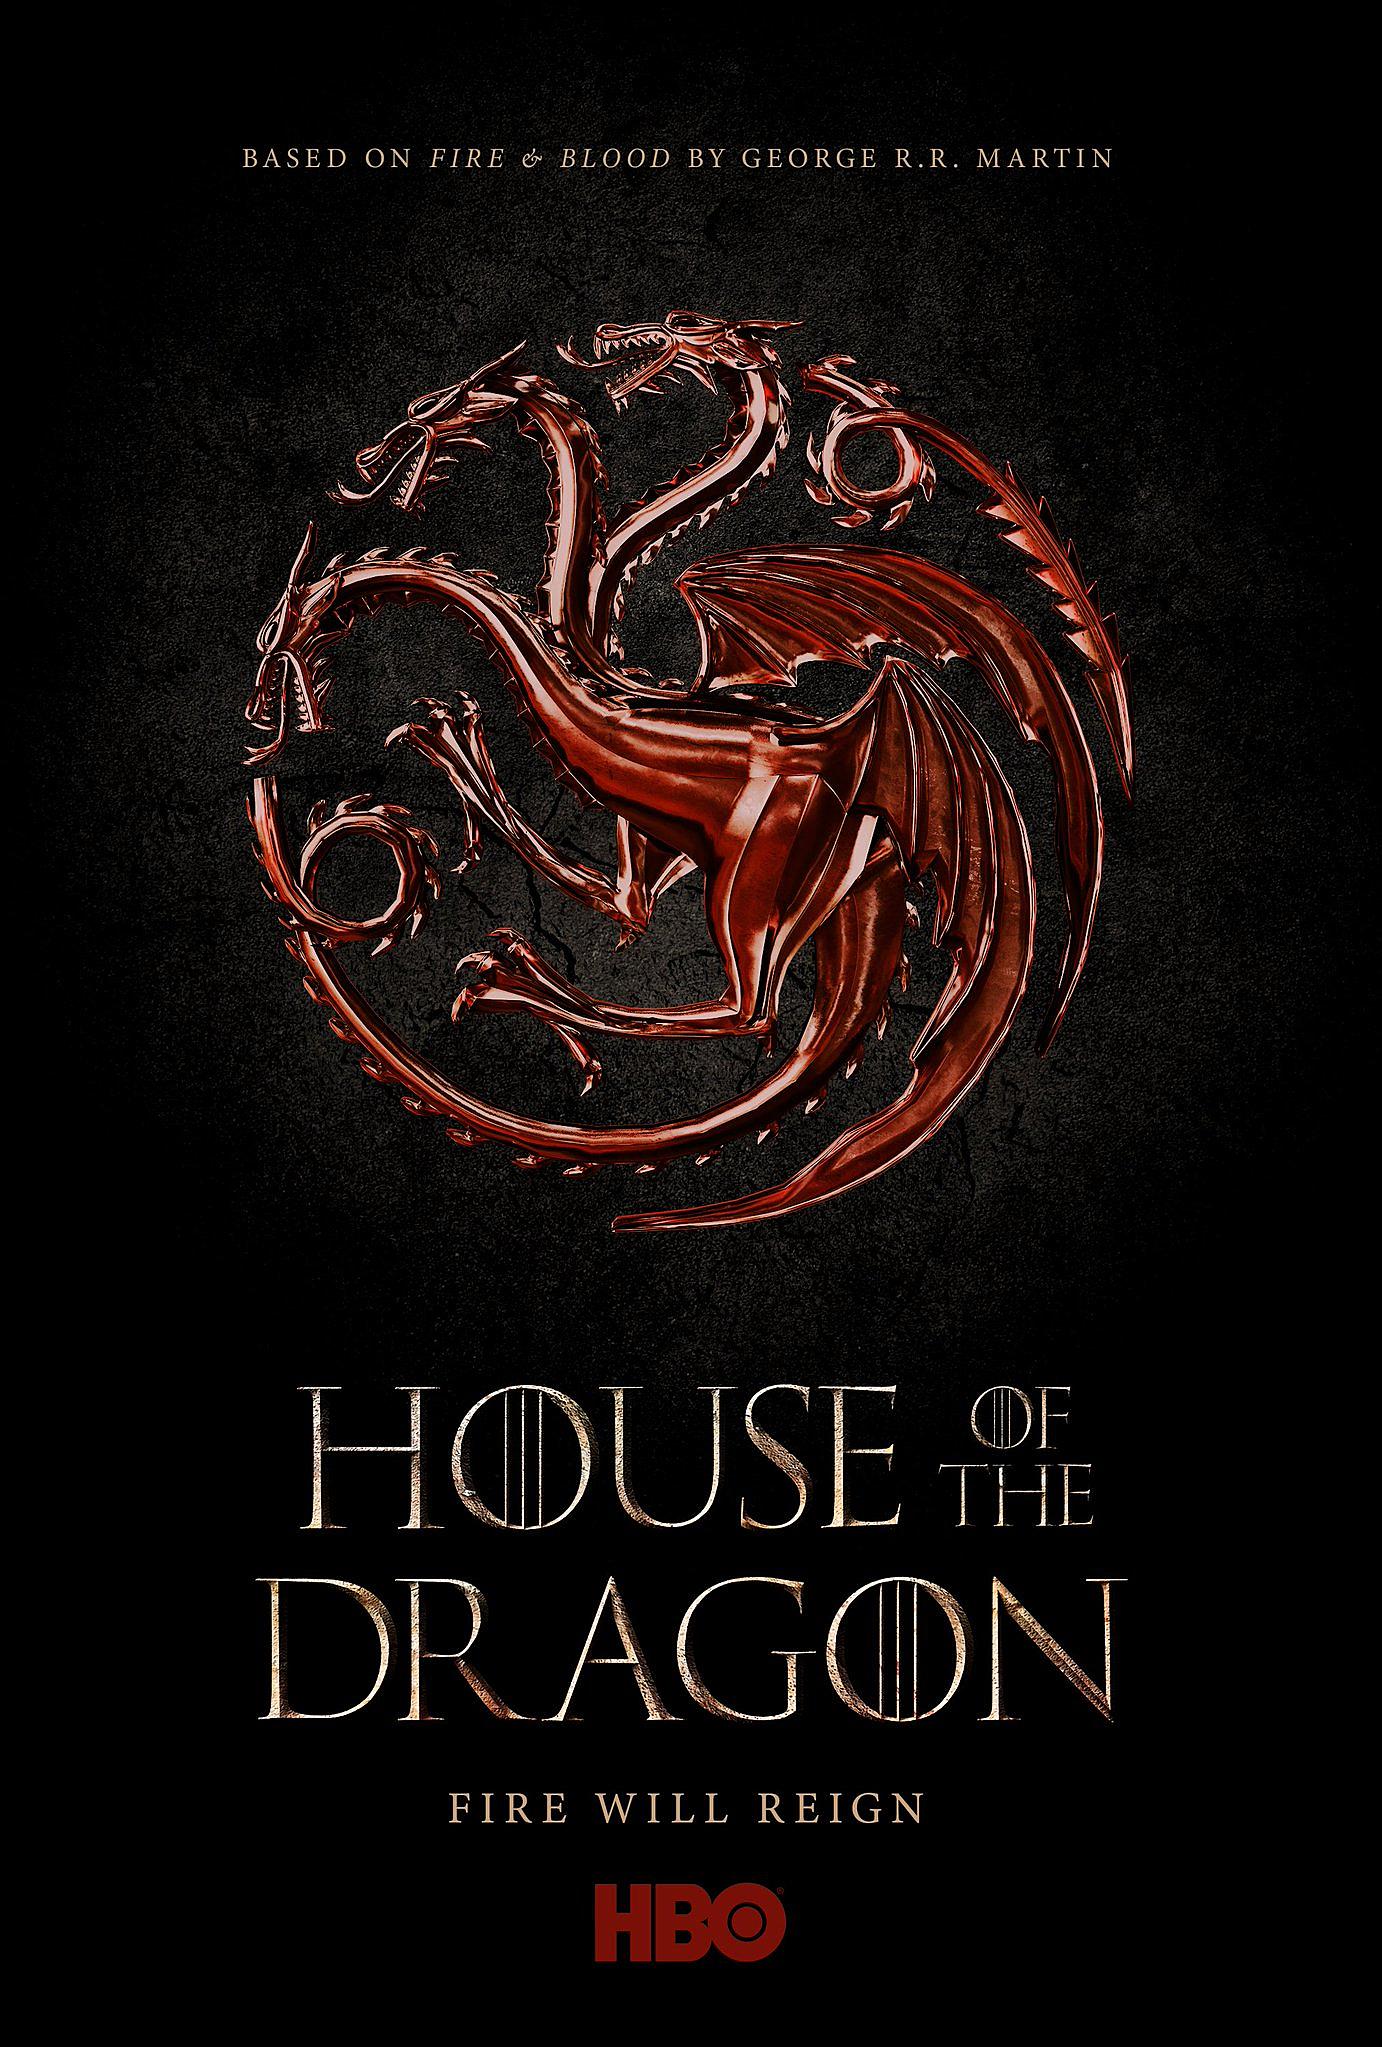 پیش درآمد Game of Thrones با نام House of Dragon معرفی شد - ویجیاتو